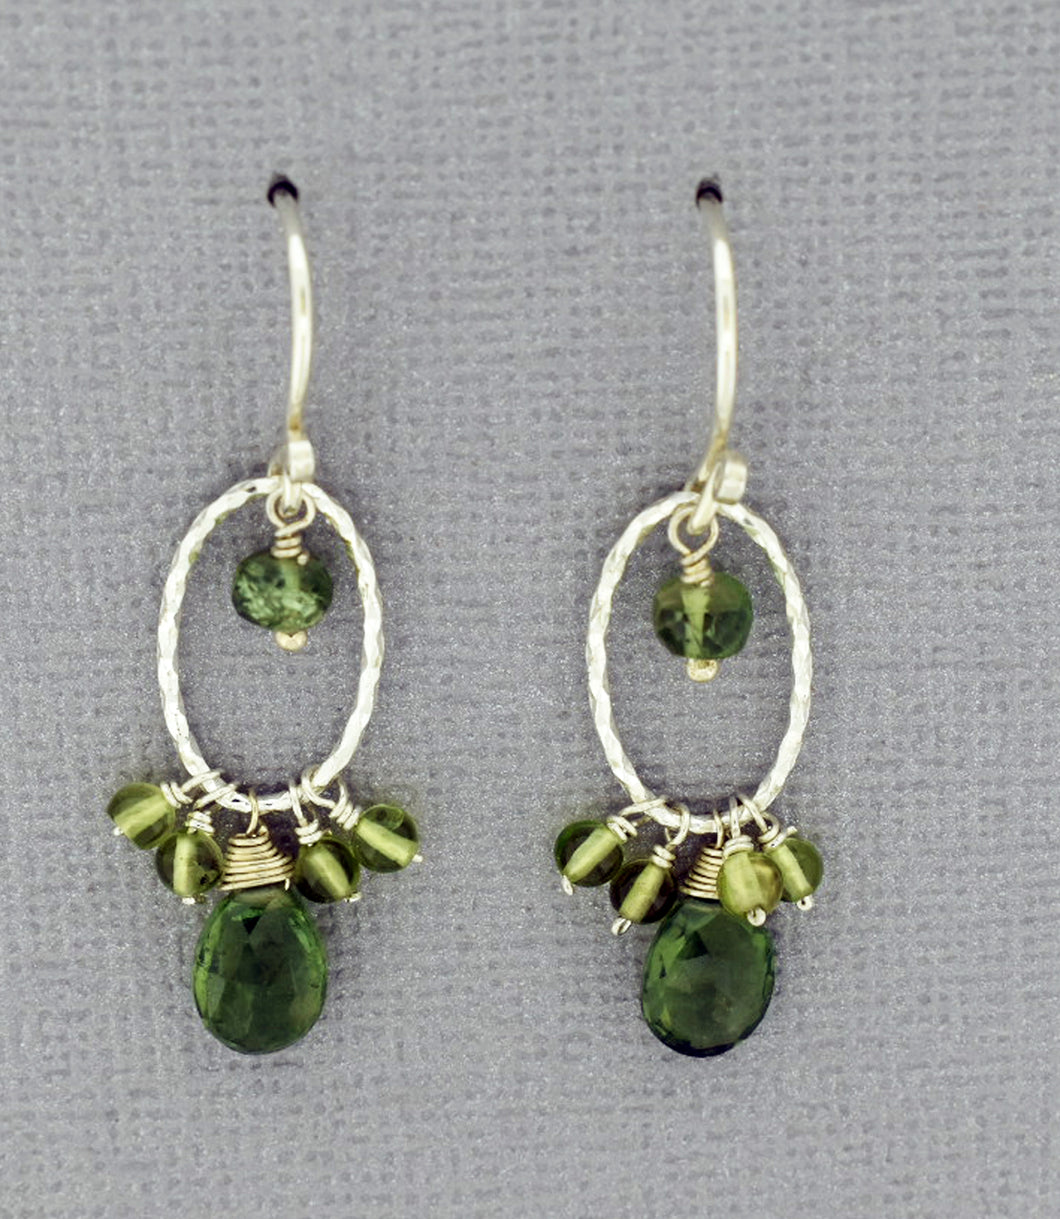 Peridot Earrings in sterling silver